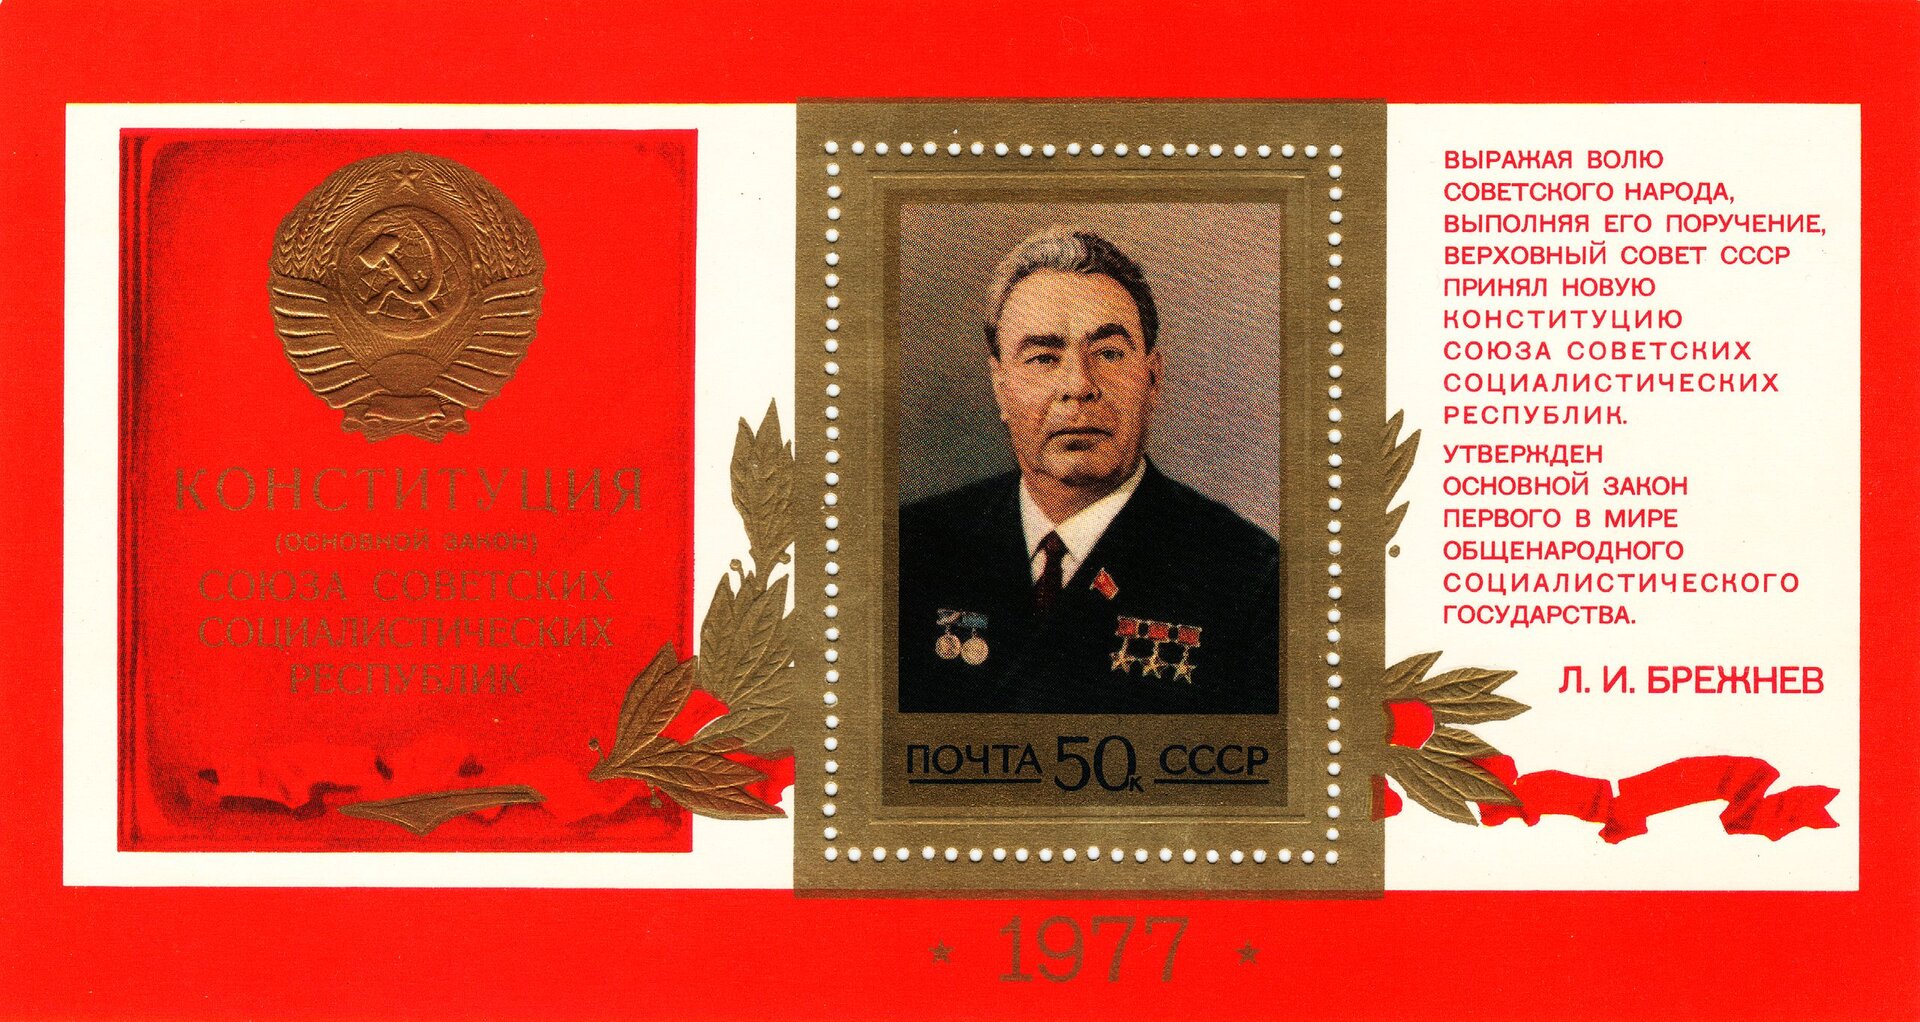 Zdjęcie przedstawia radziecki znaczek pocztowy z 1977 roku o wartości pięćdziesięciu kopiejek. Złożony jest on z trzech elementów: okładki konstytucji ZSRS, obrazu przedstawiającego Leonida Breżniewa oraz tekstu okolicznościowego w języku rosyjskim.